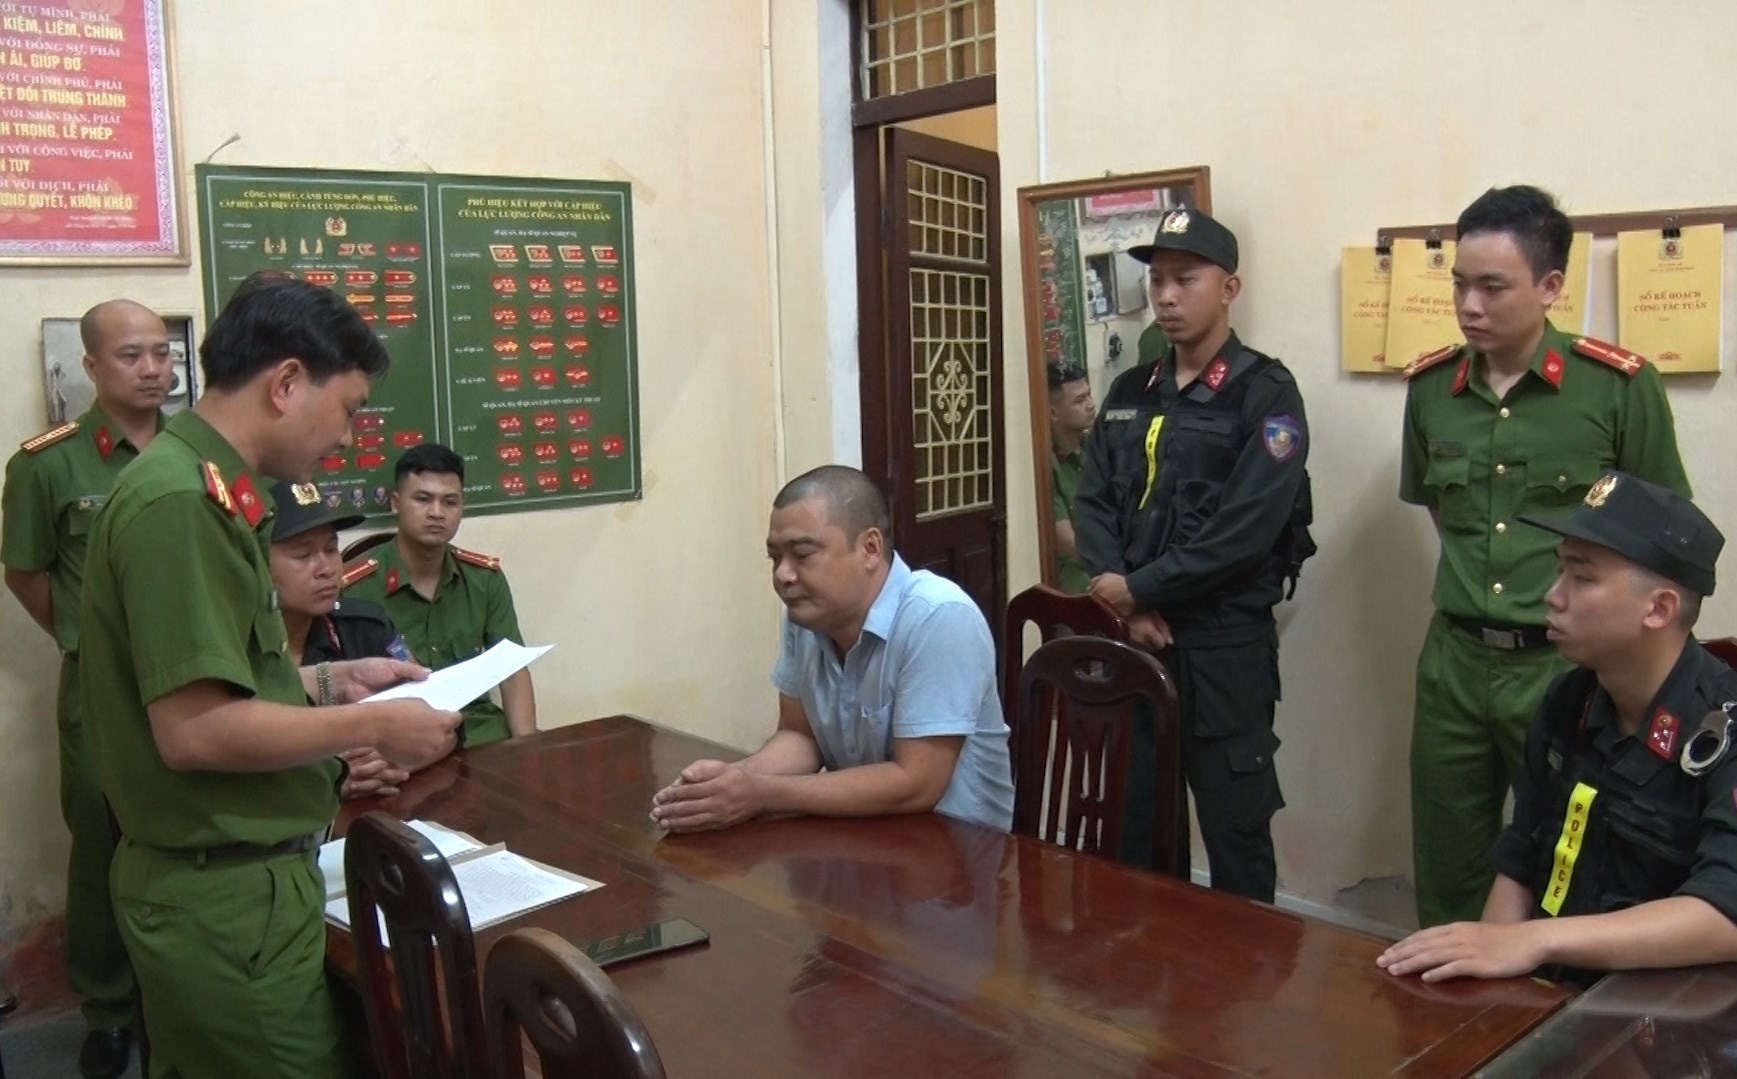 Trưởng Đài hóa thân hoàn vũ ở Nam Định vừa bị bắt là “ông trùm”, chủ mưu cưỡng đoạt tiền hỏa táng?